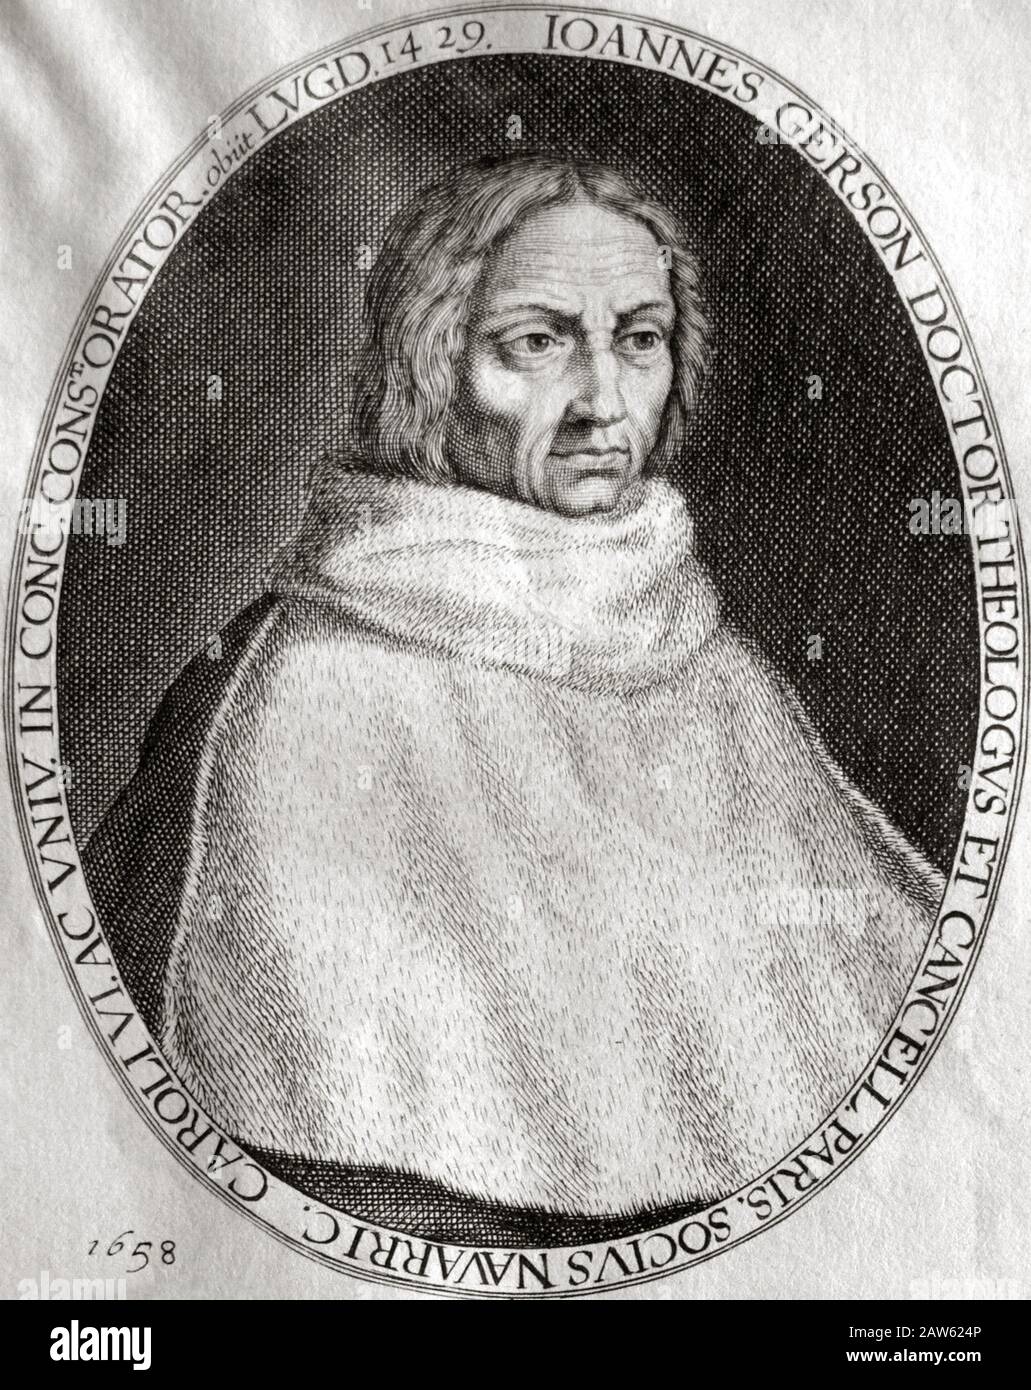 Il riformatore francese e Umanista , studioso , educatore e poeta e teologo  JEAN CHARLIER DE GERSON ( 1363 - 1429 ) , ritratto inciso nel 1658 . G Foto  stock - Alamy